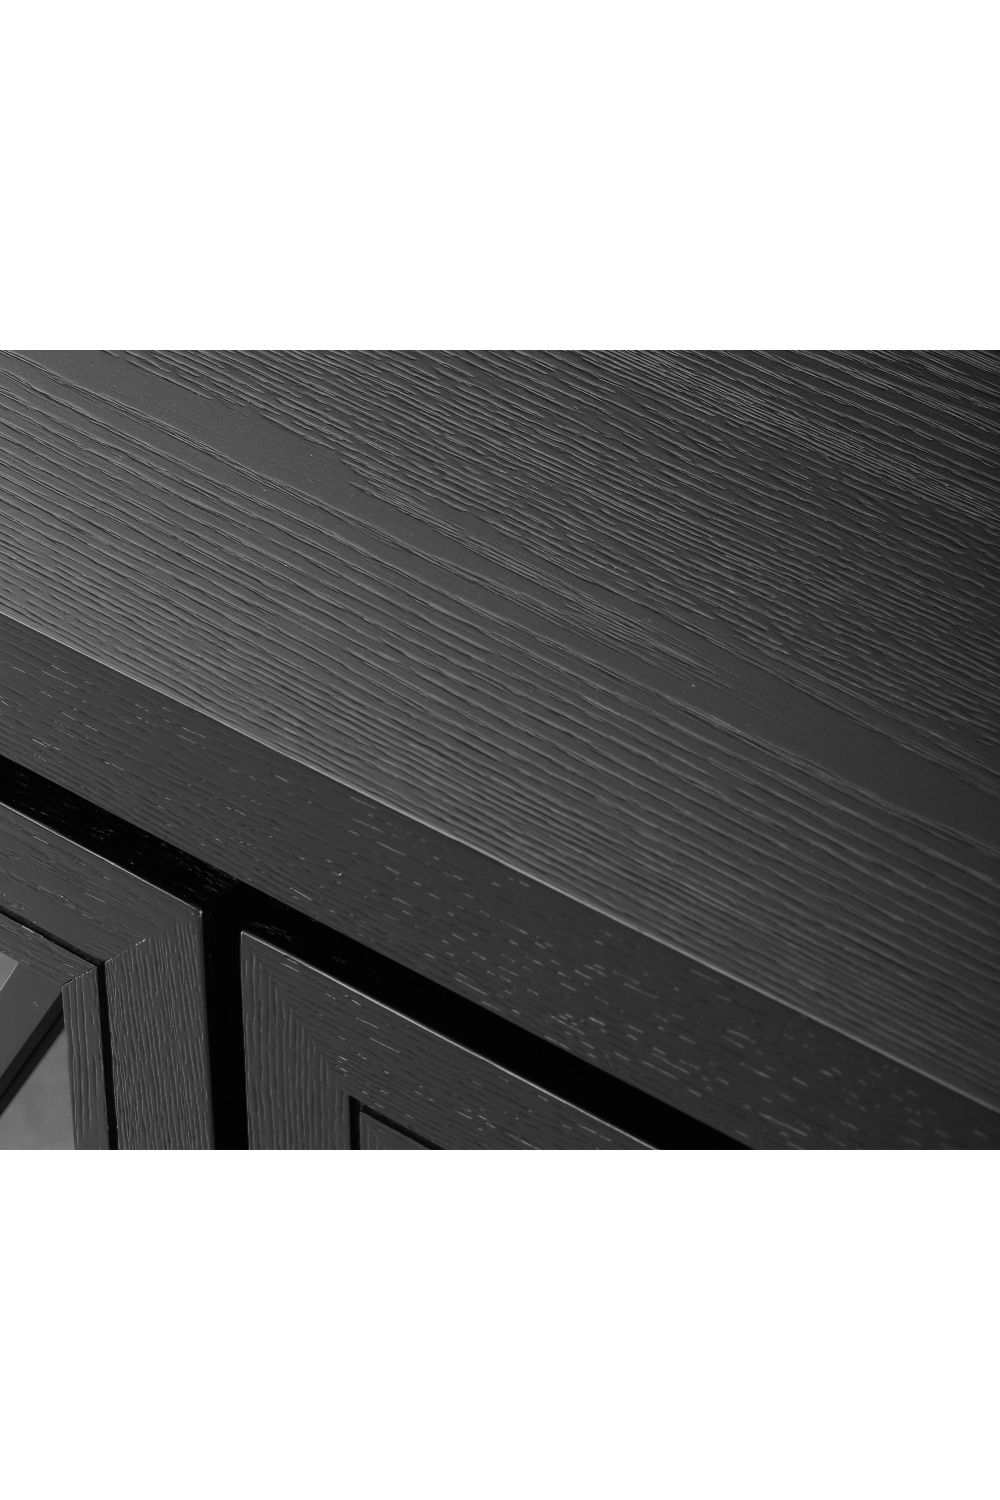 Black Oak Wooden Sideboard | Liang & Eimil York | Oroa.com